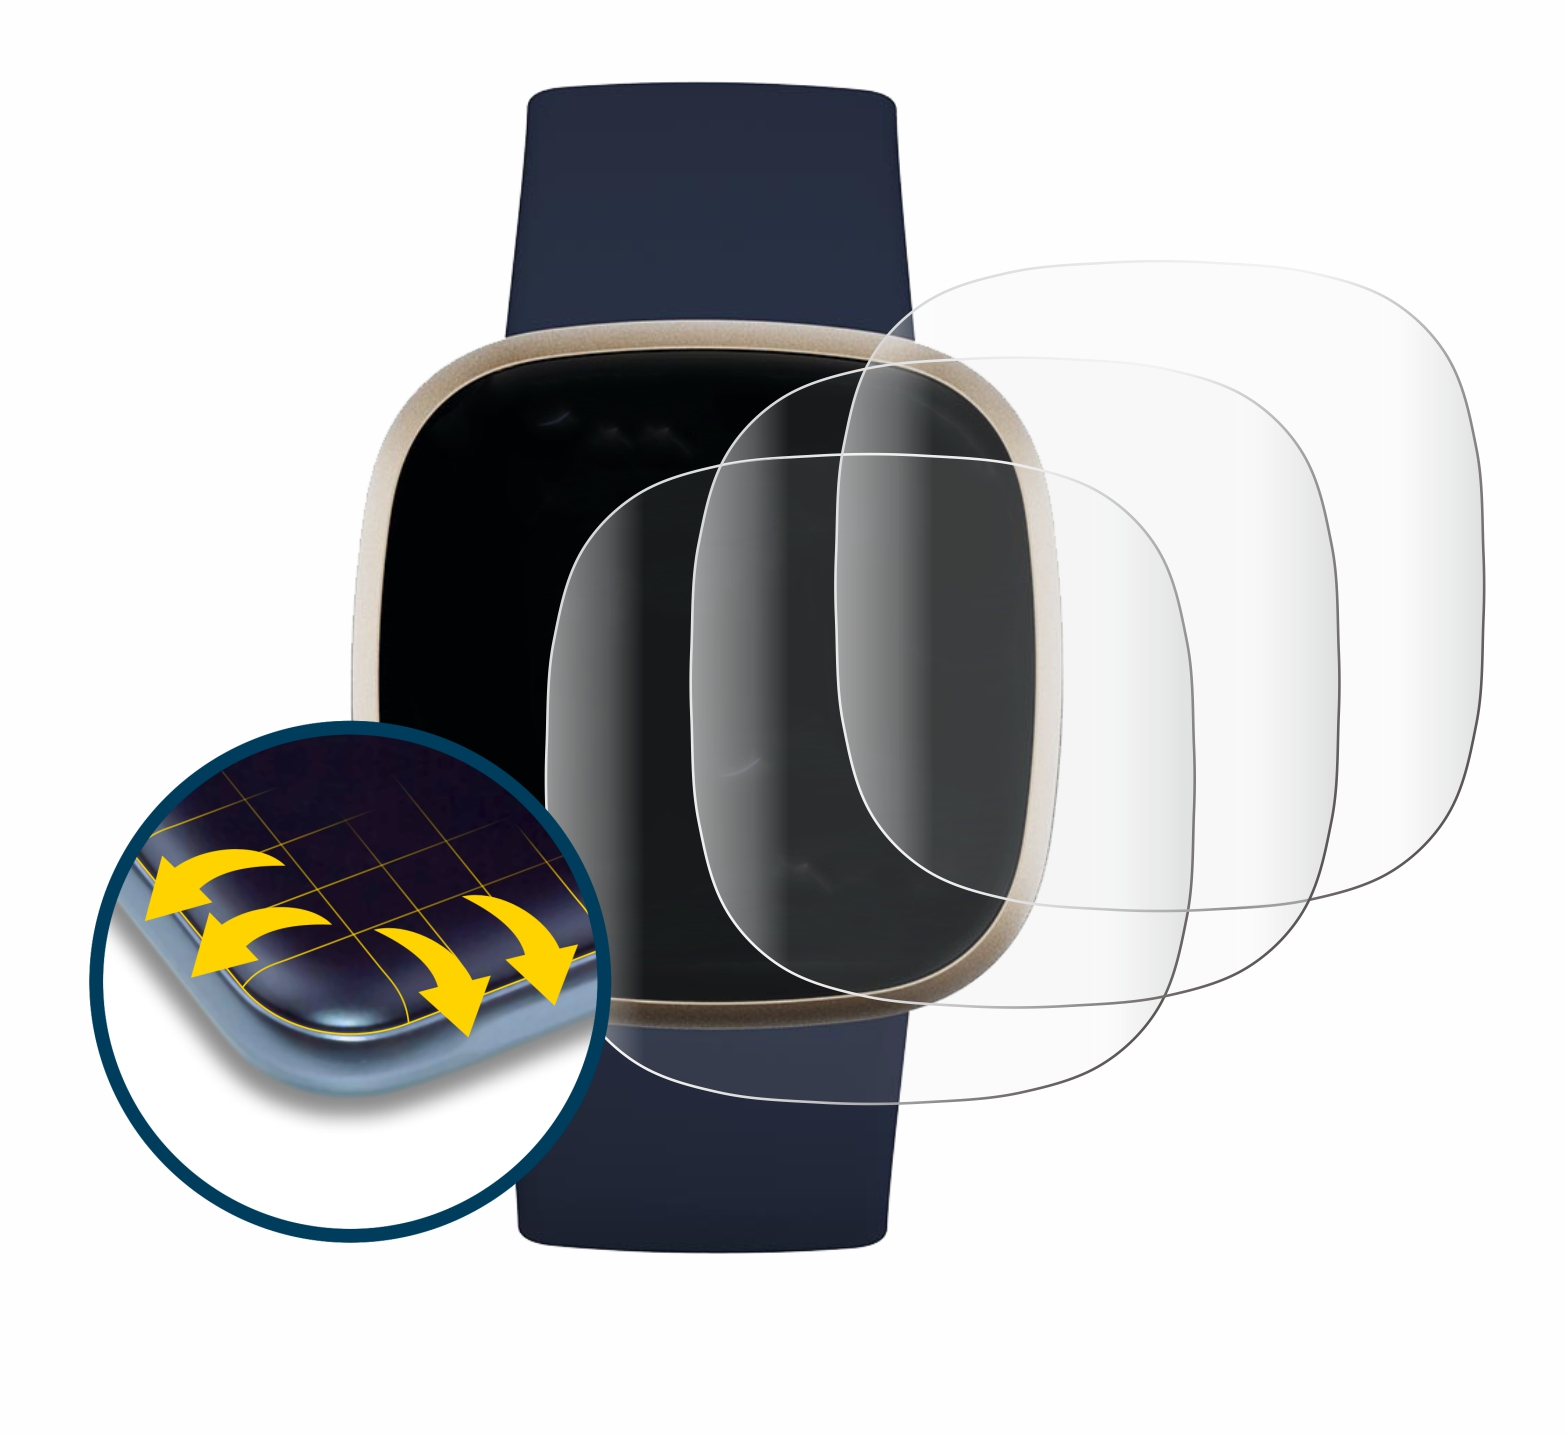 SAVVIES 4x Flex Full-Cover 3D Fitbit Curved Versa 3) Schutzfolie(für